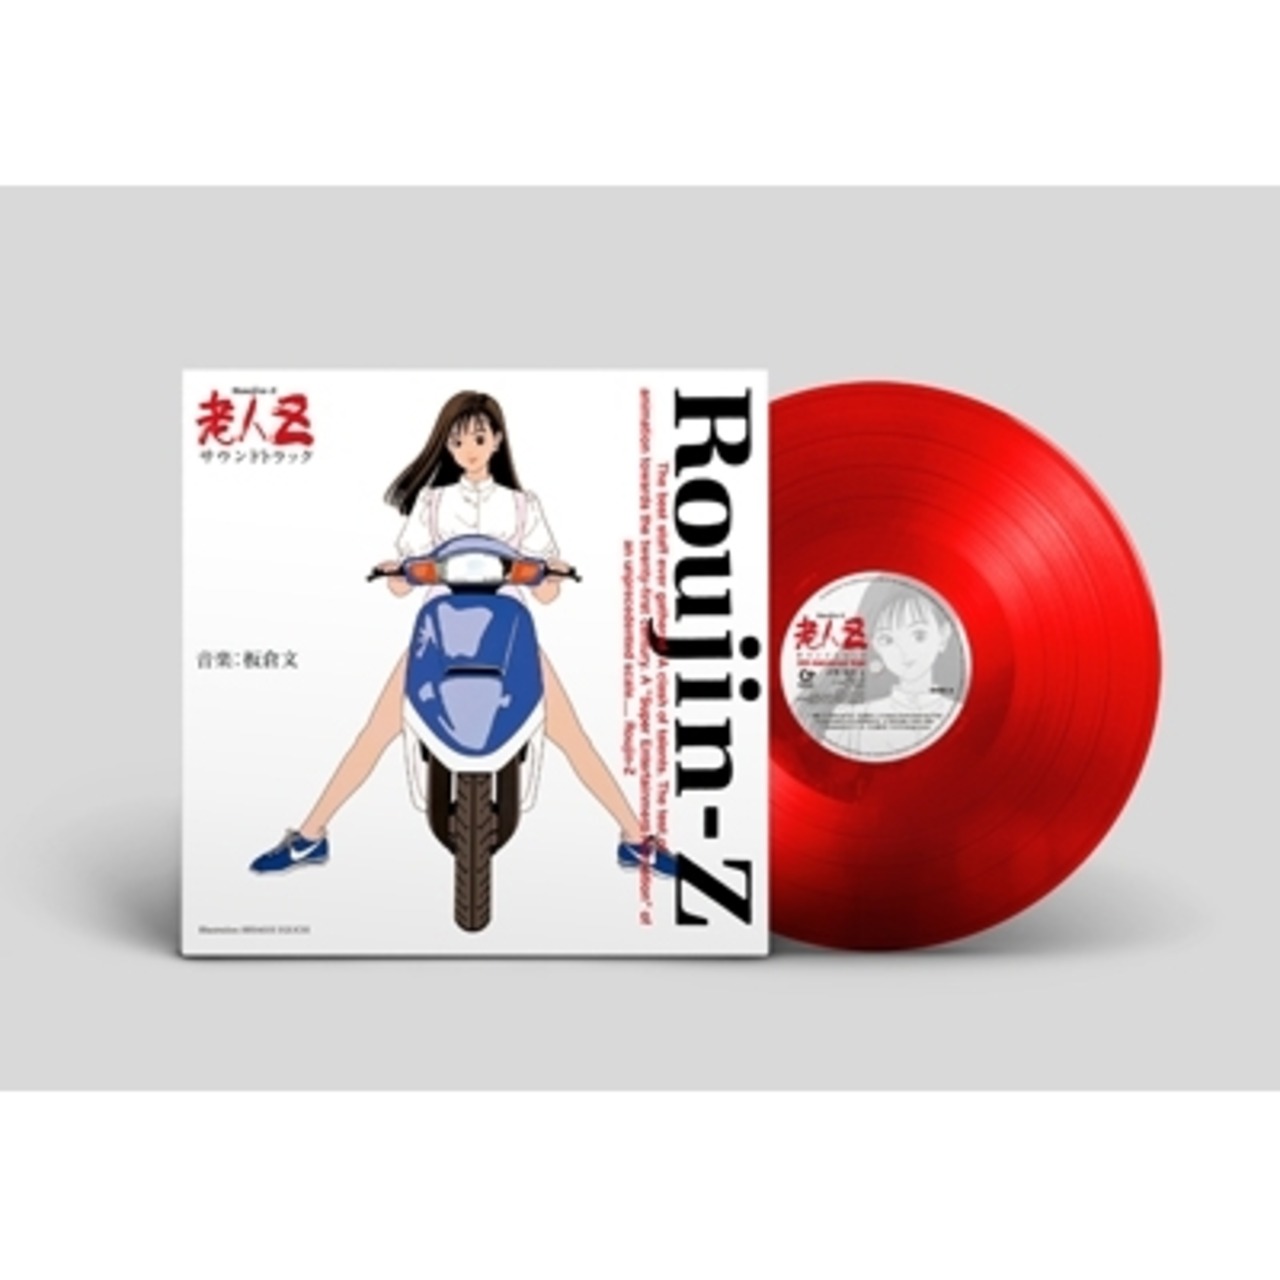 【完全生産限定】板倉 文 - 老人Z　サウンドトラック(30th Anniversary Vinyl)　12インチアナログ盤